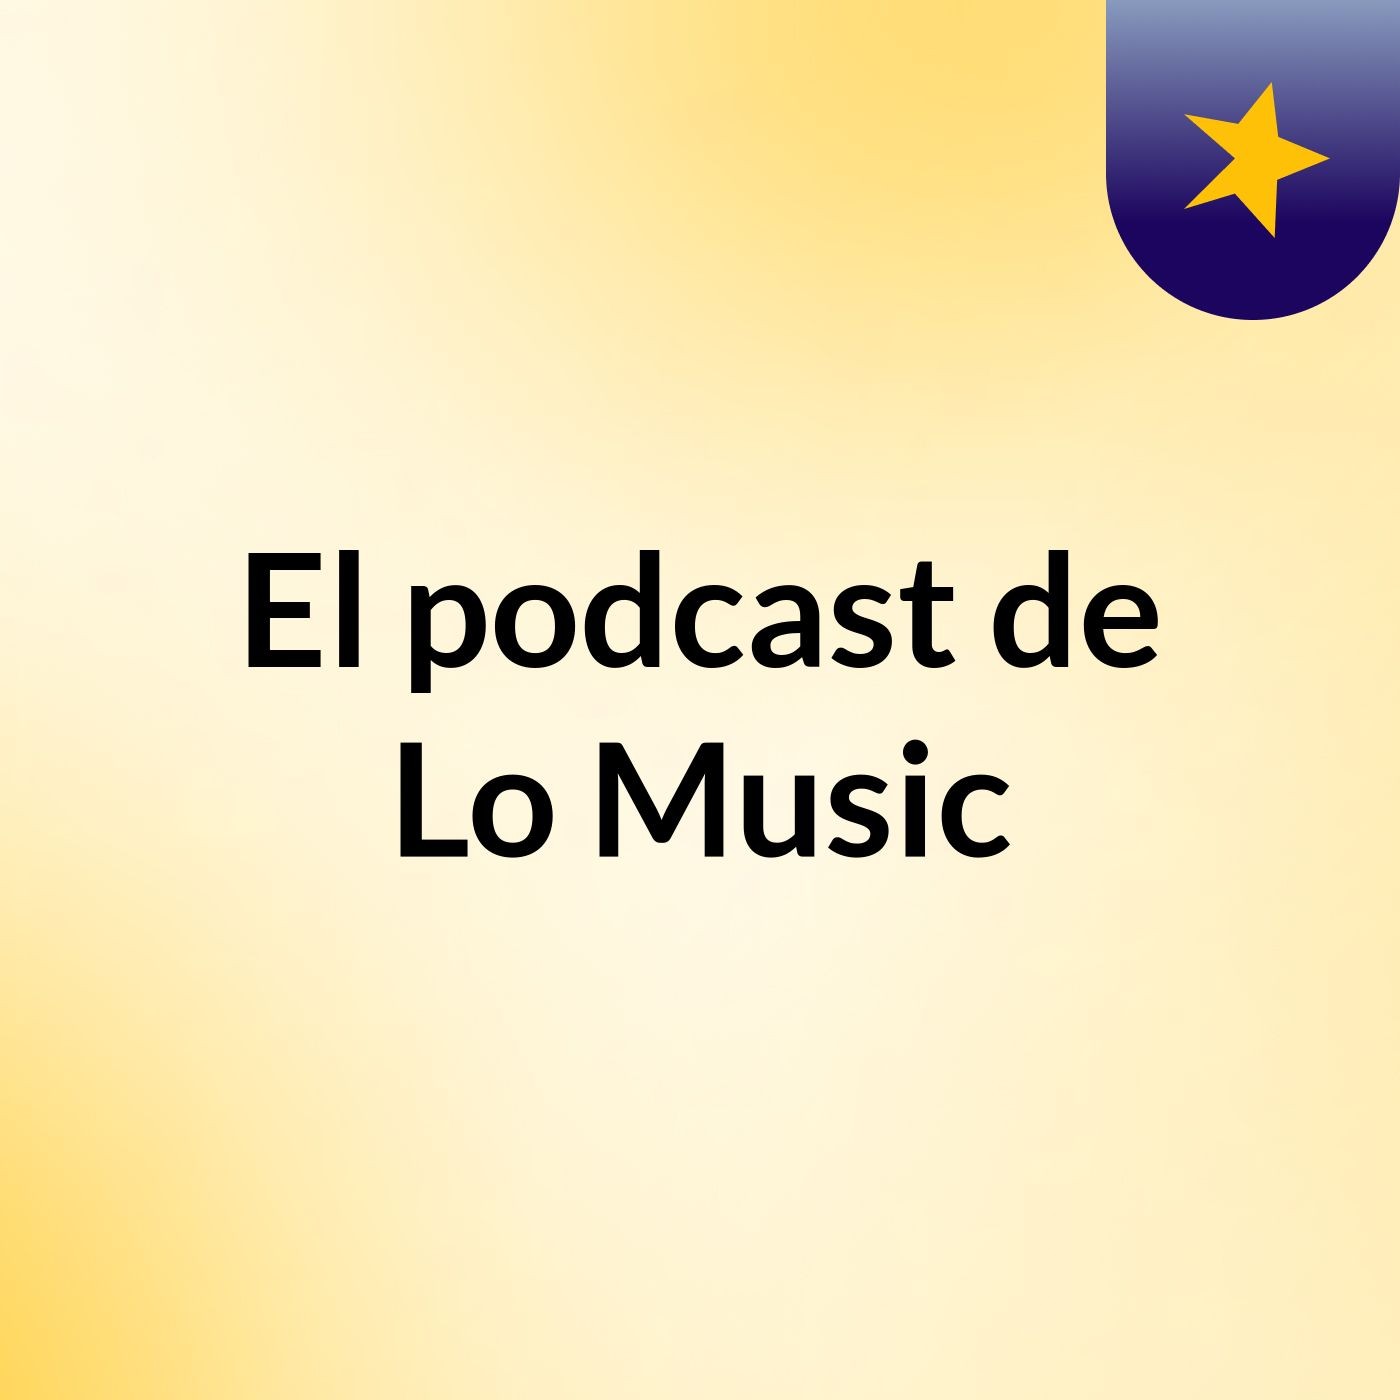 Episodio 3 - El podcast de Lo Music